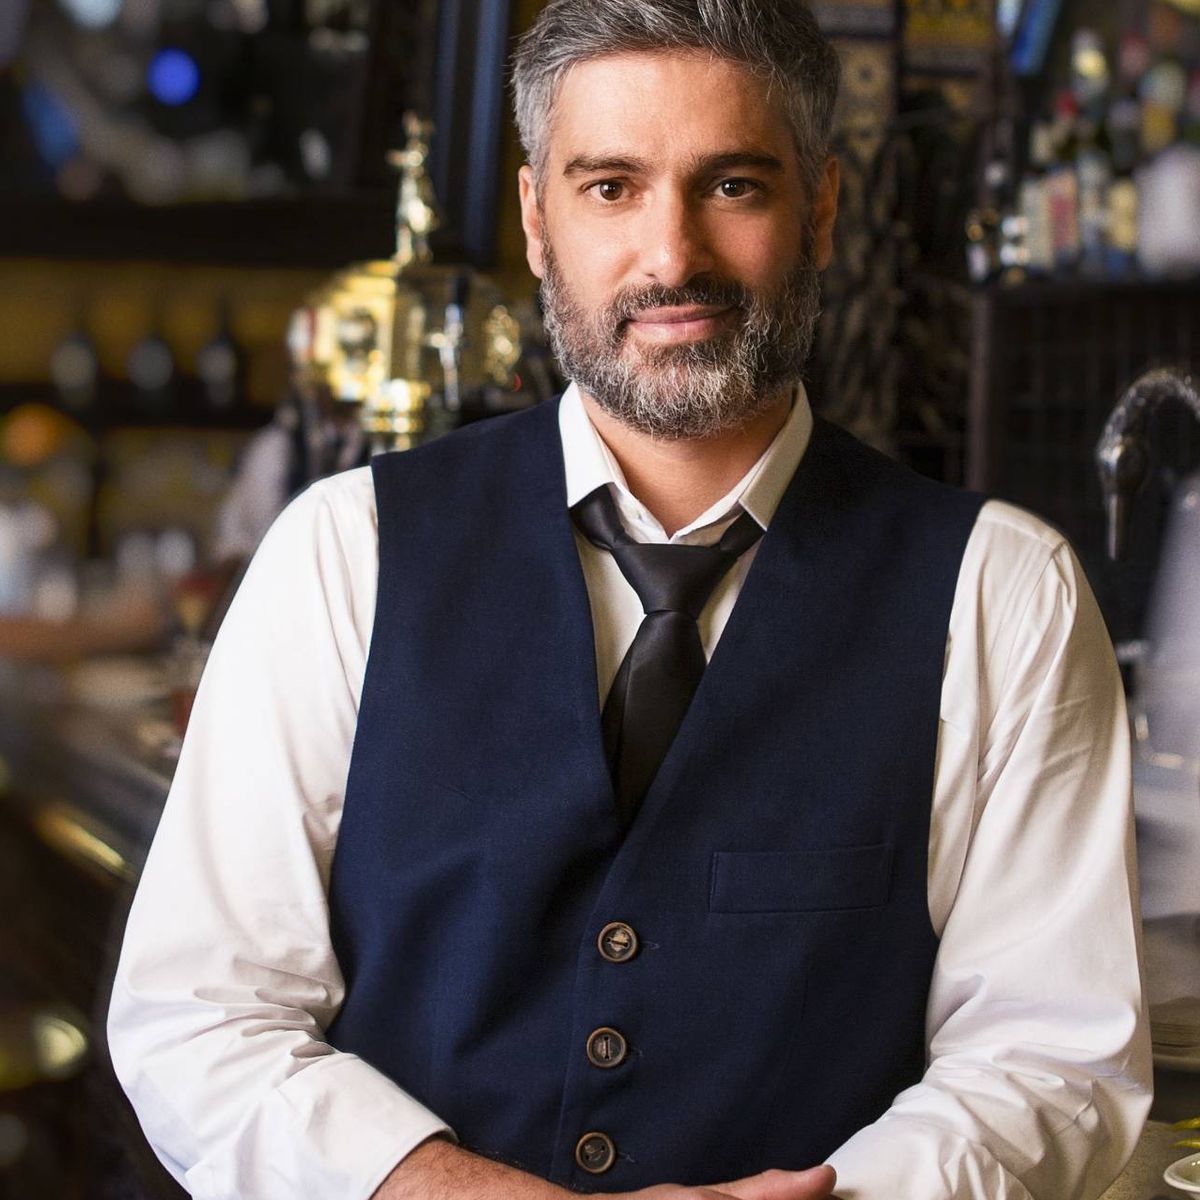 El barman de moda en Madrid: es uno de los mejores del mundo